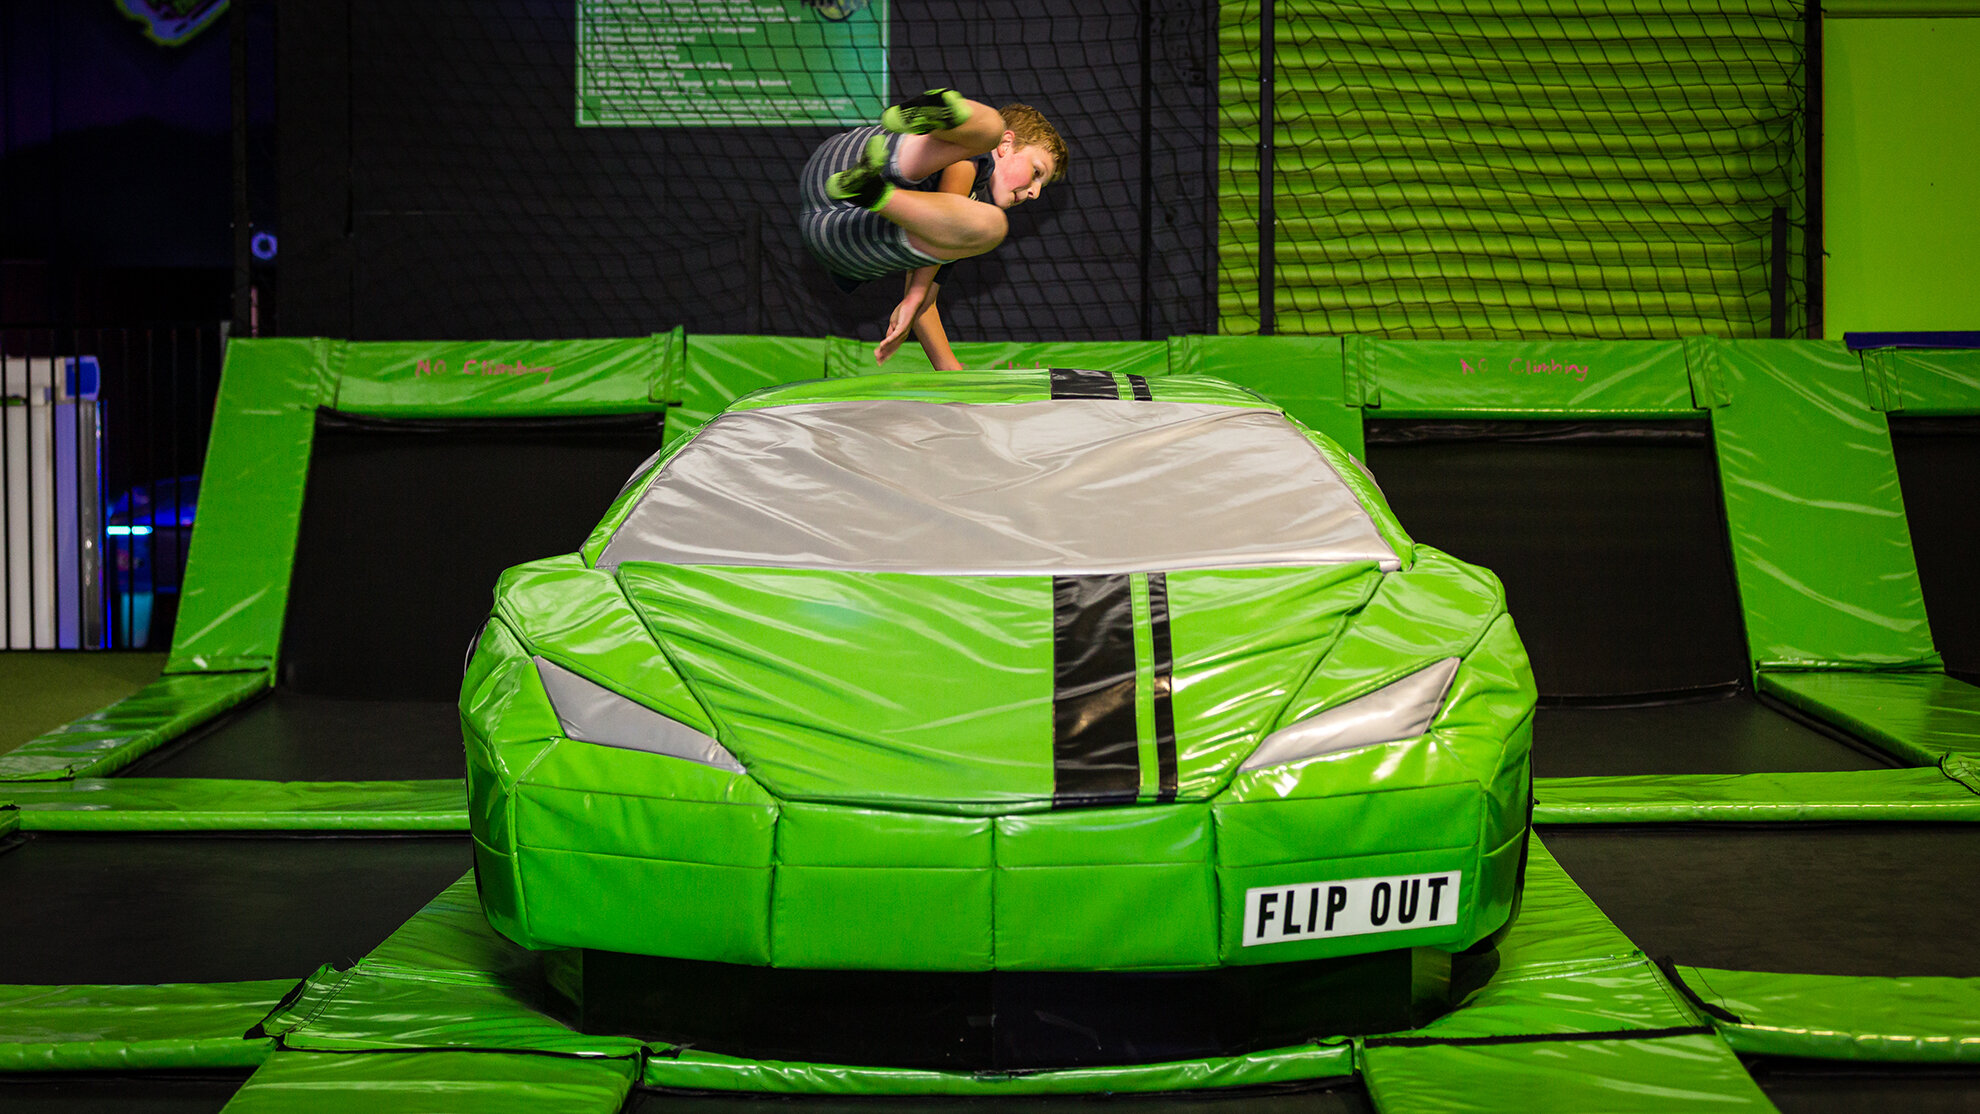 FO-trampoline-boy-jumping-car.jpg